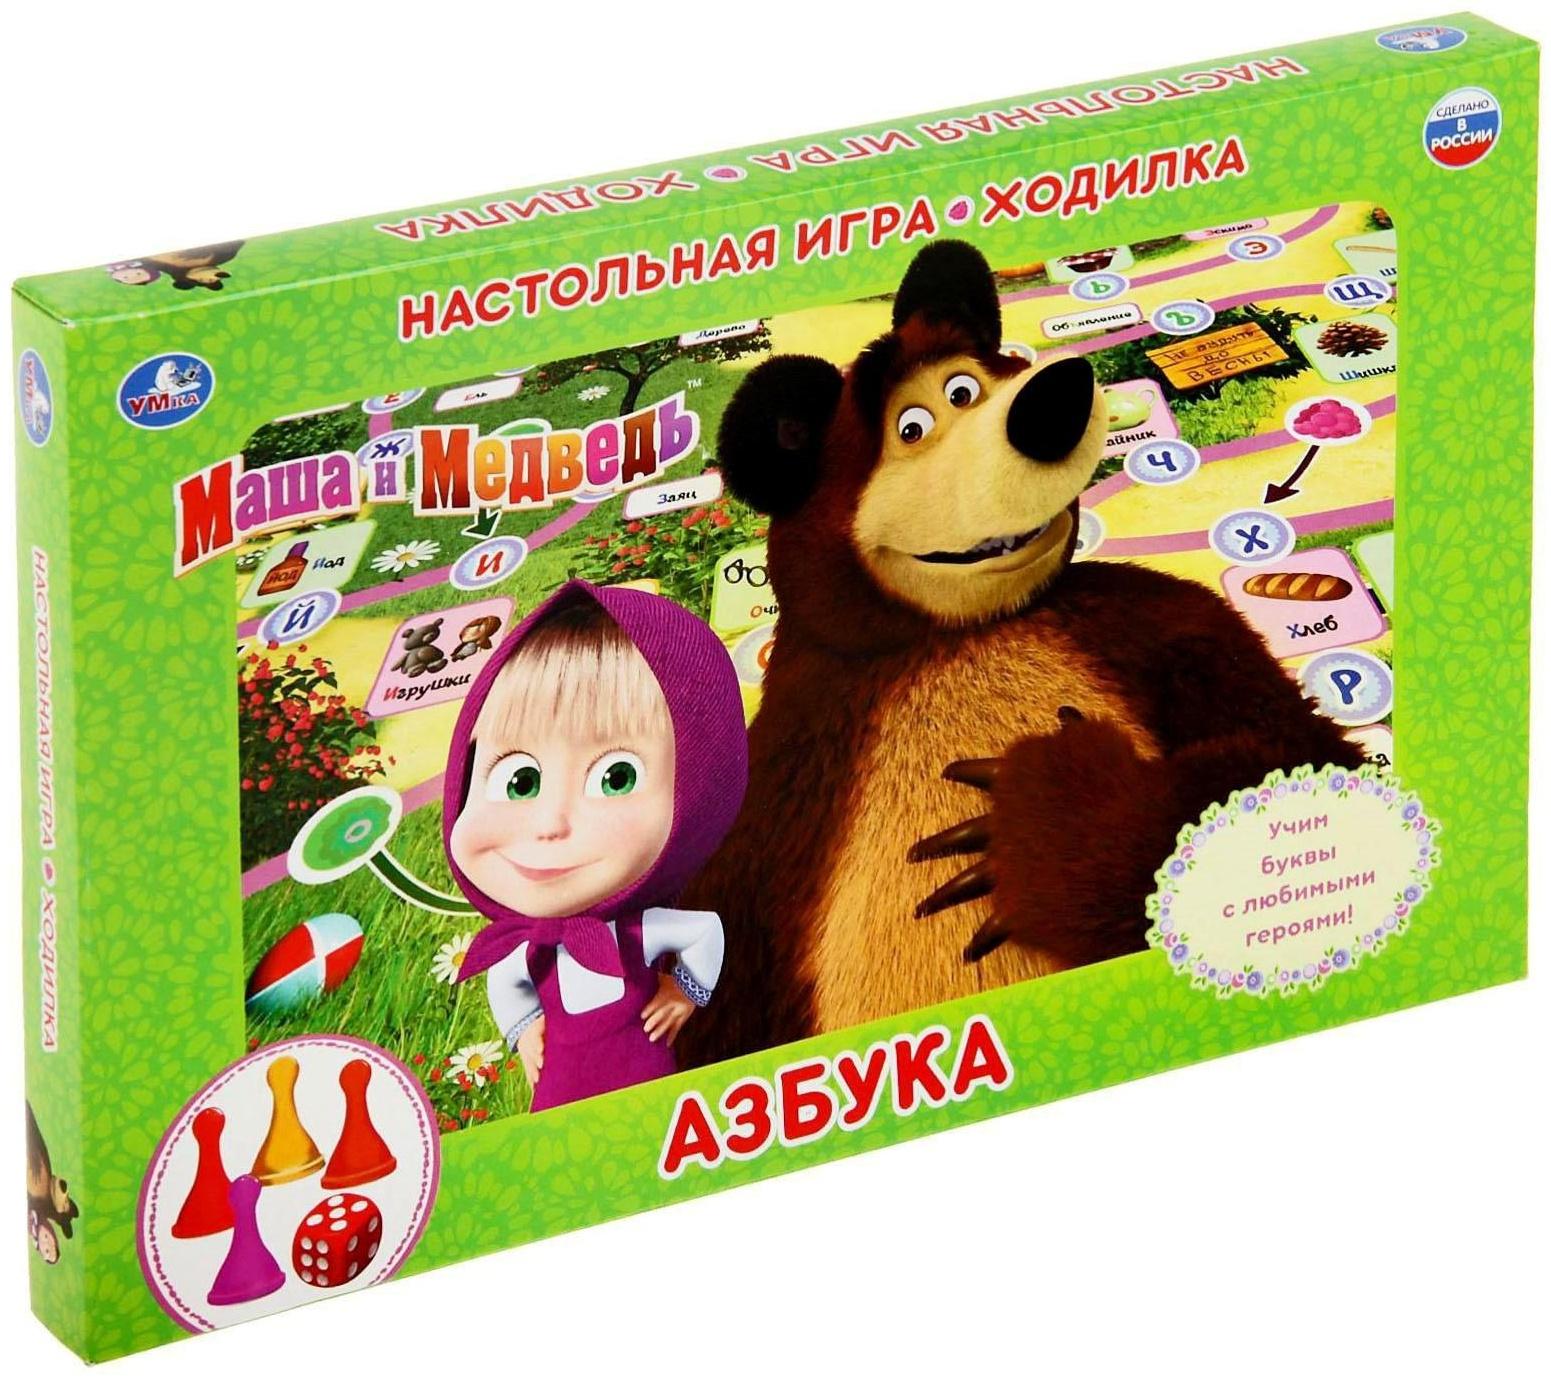 Настольная игра-ходилка «Маша и Медведь, Азбука»